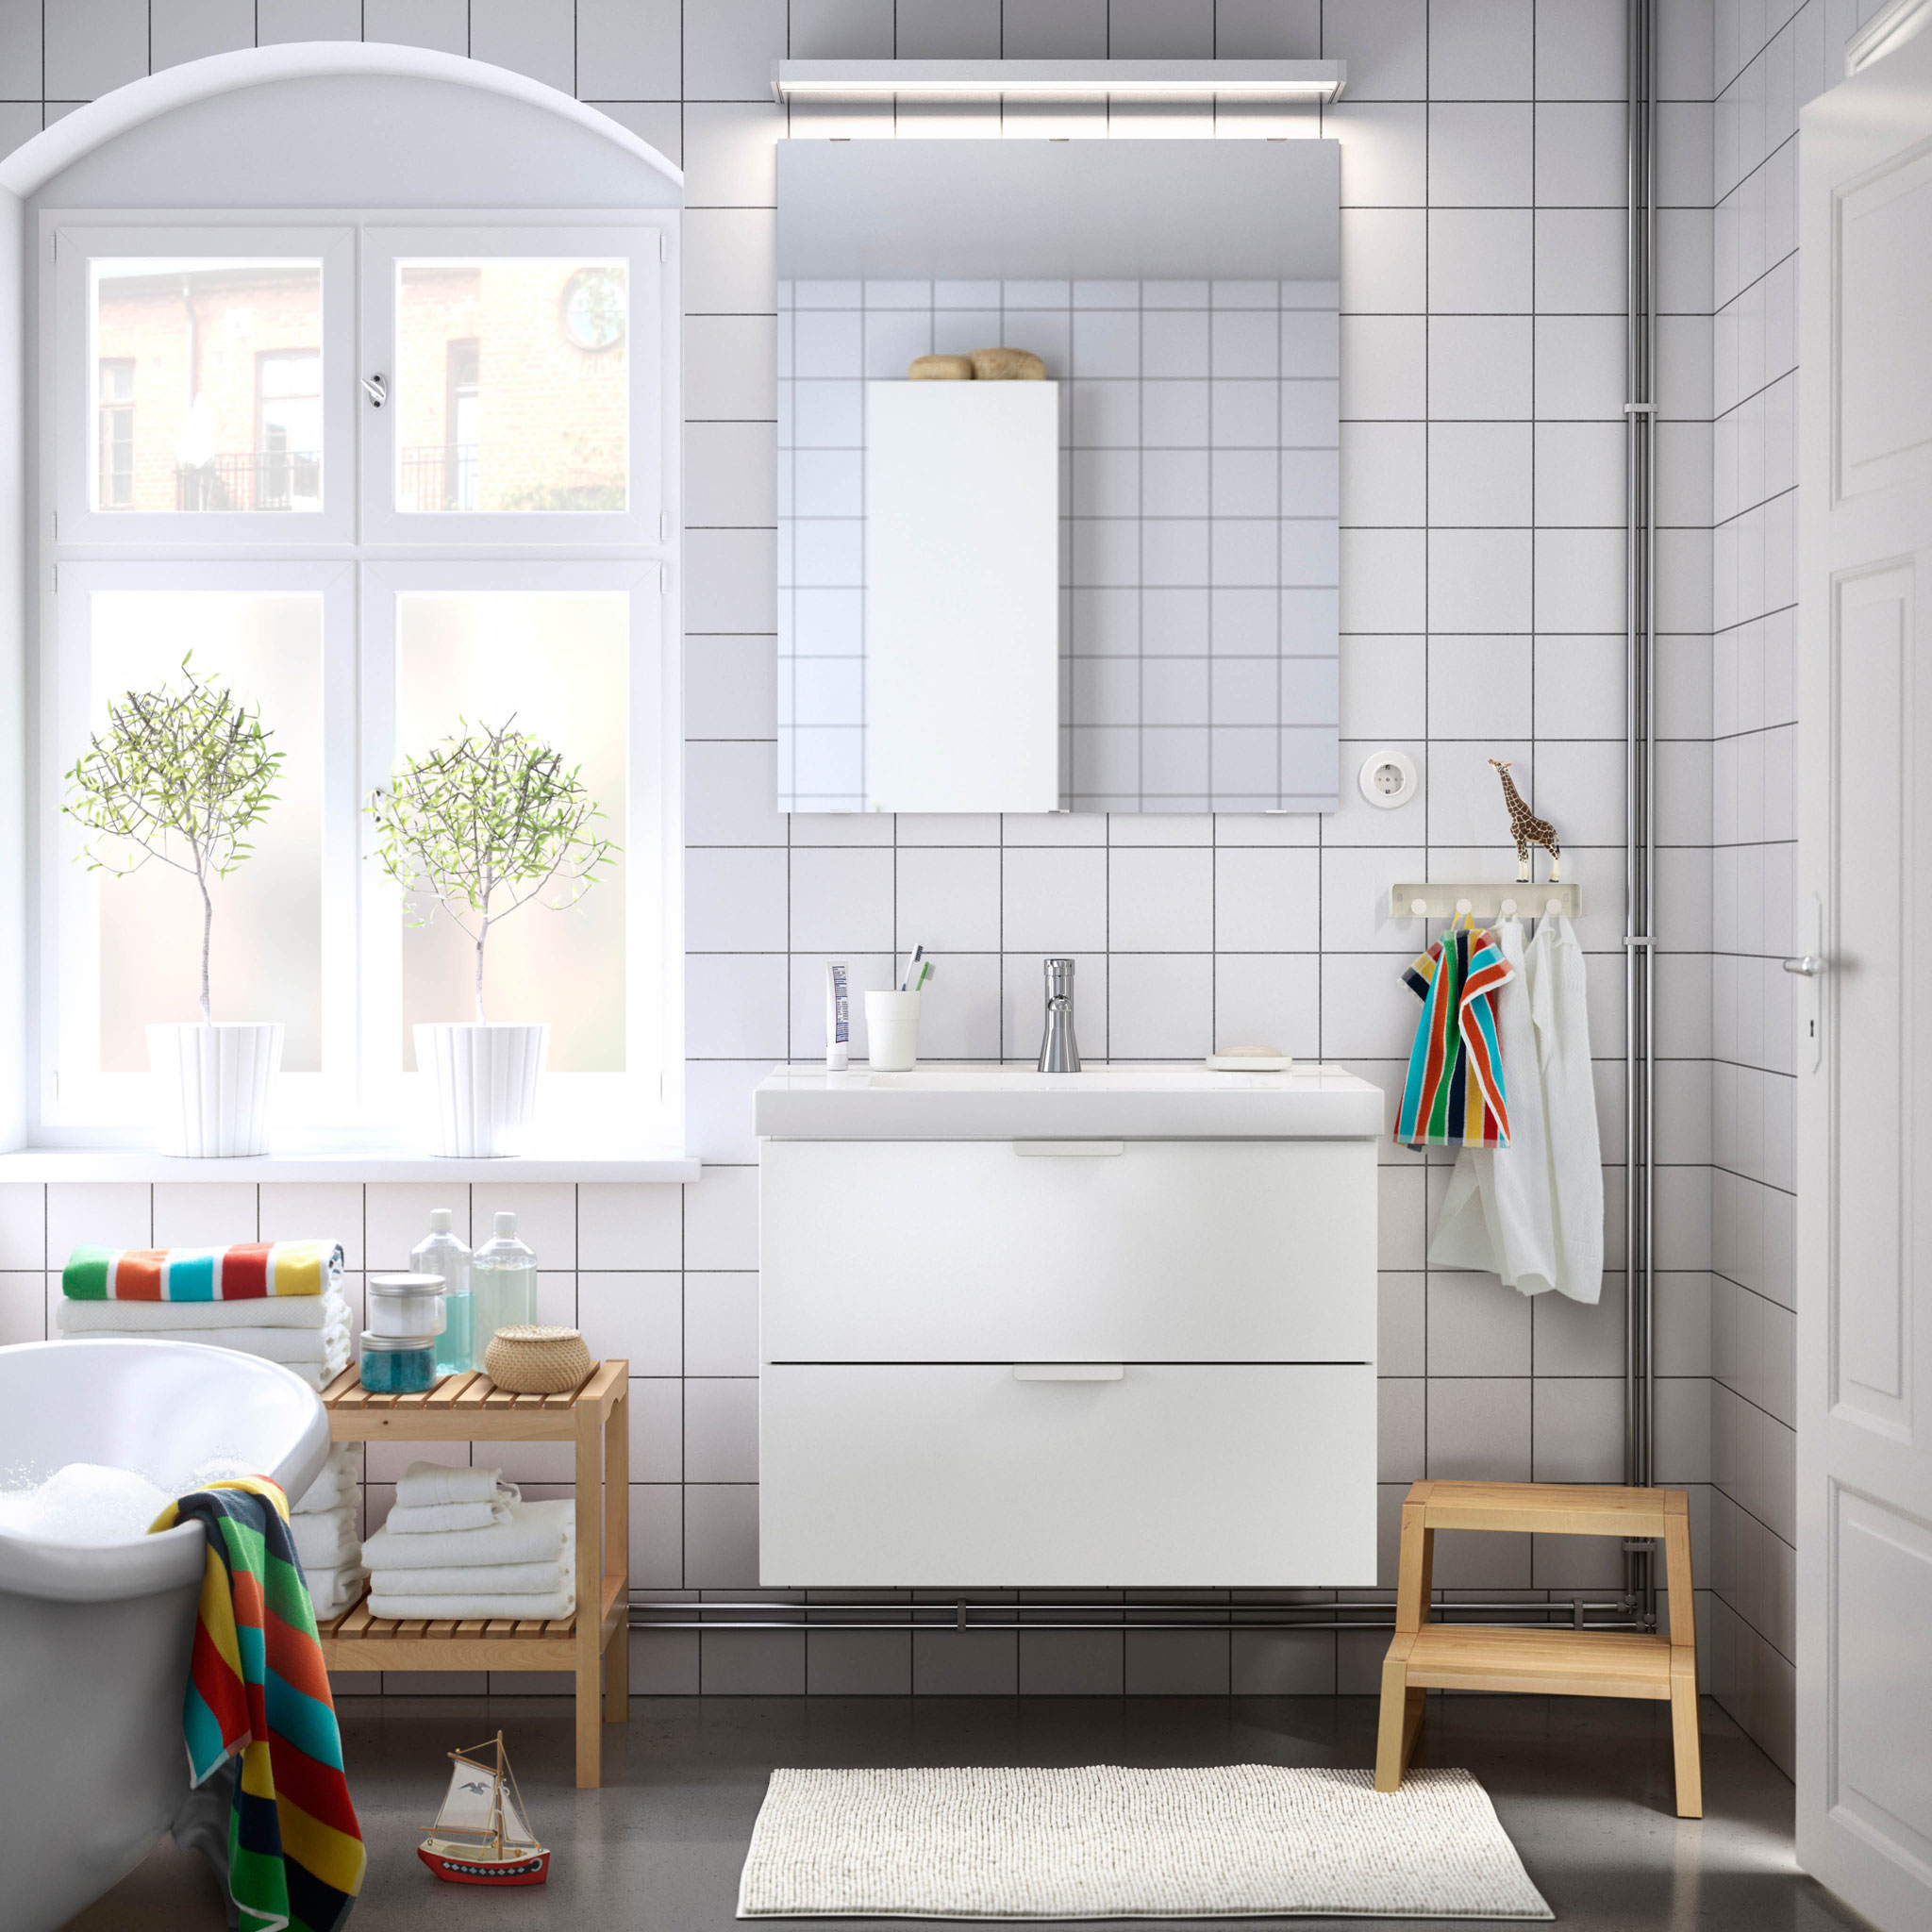 bathroom-simple-bathroom-interior-minimalist-scandinavian-simple-bathroom-scandinavian-l-7209679f9a8fd19f.jpg